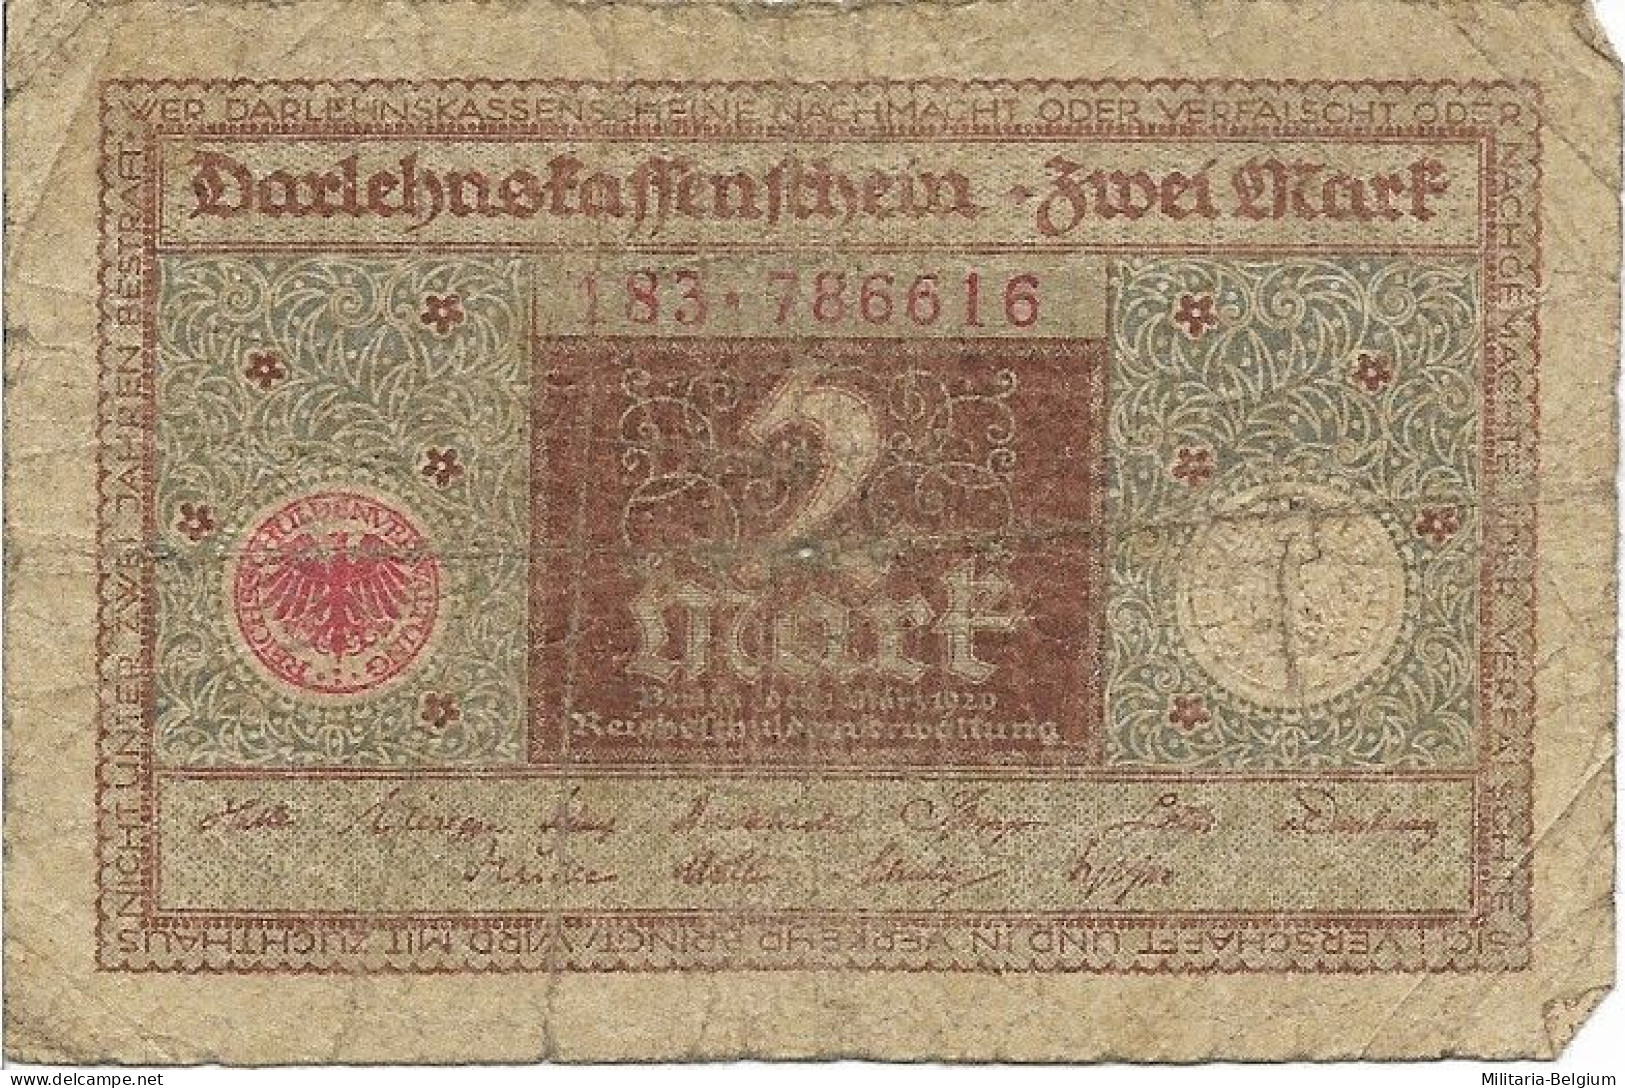 Duitsland - Darlehnskassenschein Zwei Mark - 1920 - Reichsschuldenverwaltung